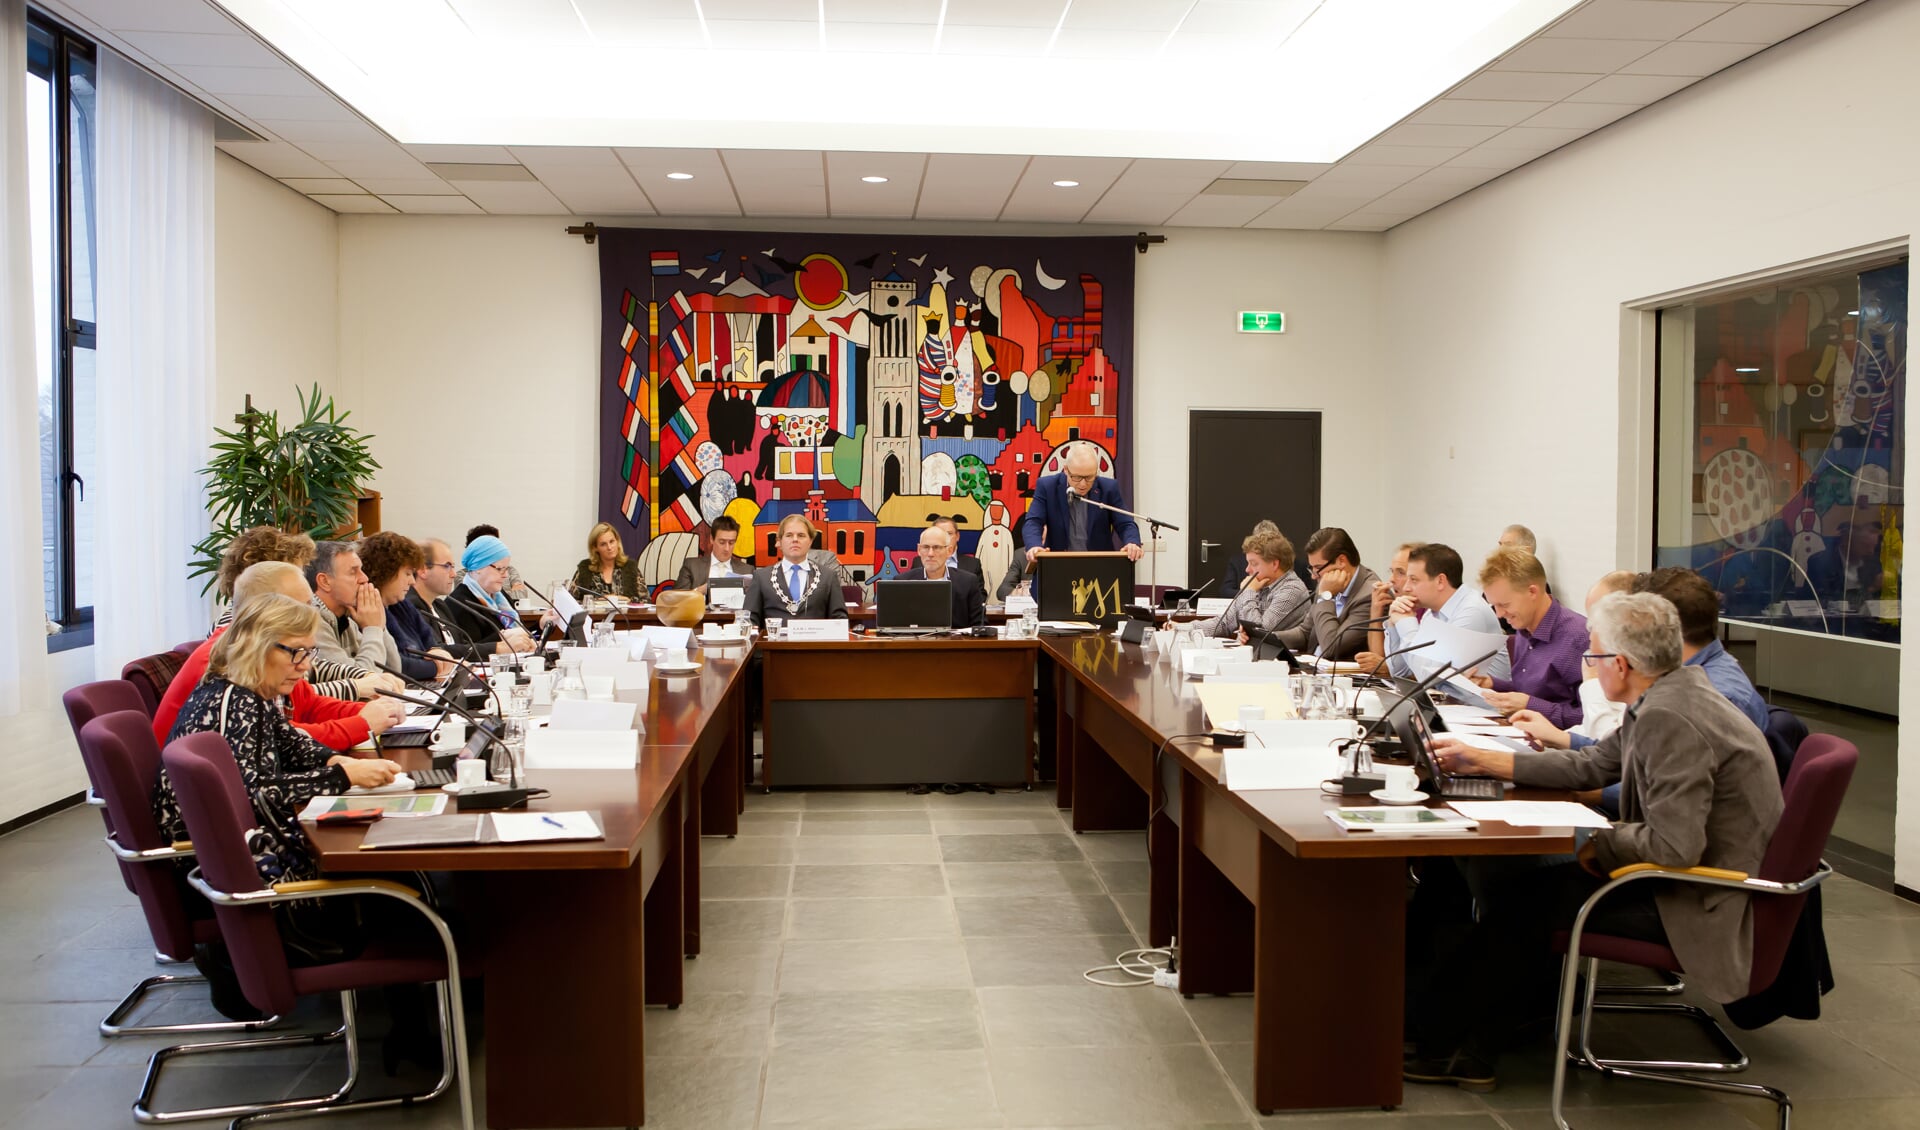 De gemeenteraad van Mill en Sint Hubert vergadert donderdag 12 december over de toekomst van de gemeente. (archieffoto: De Maas Driehoek)